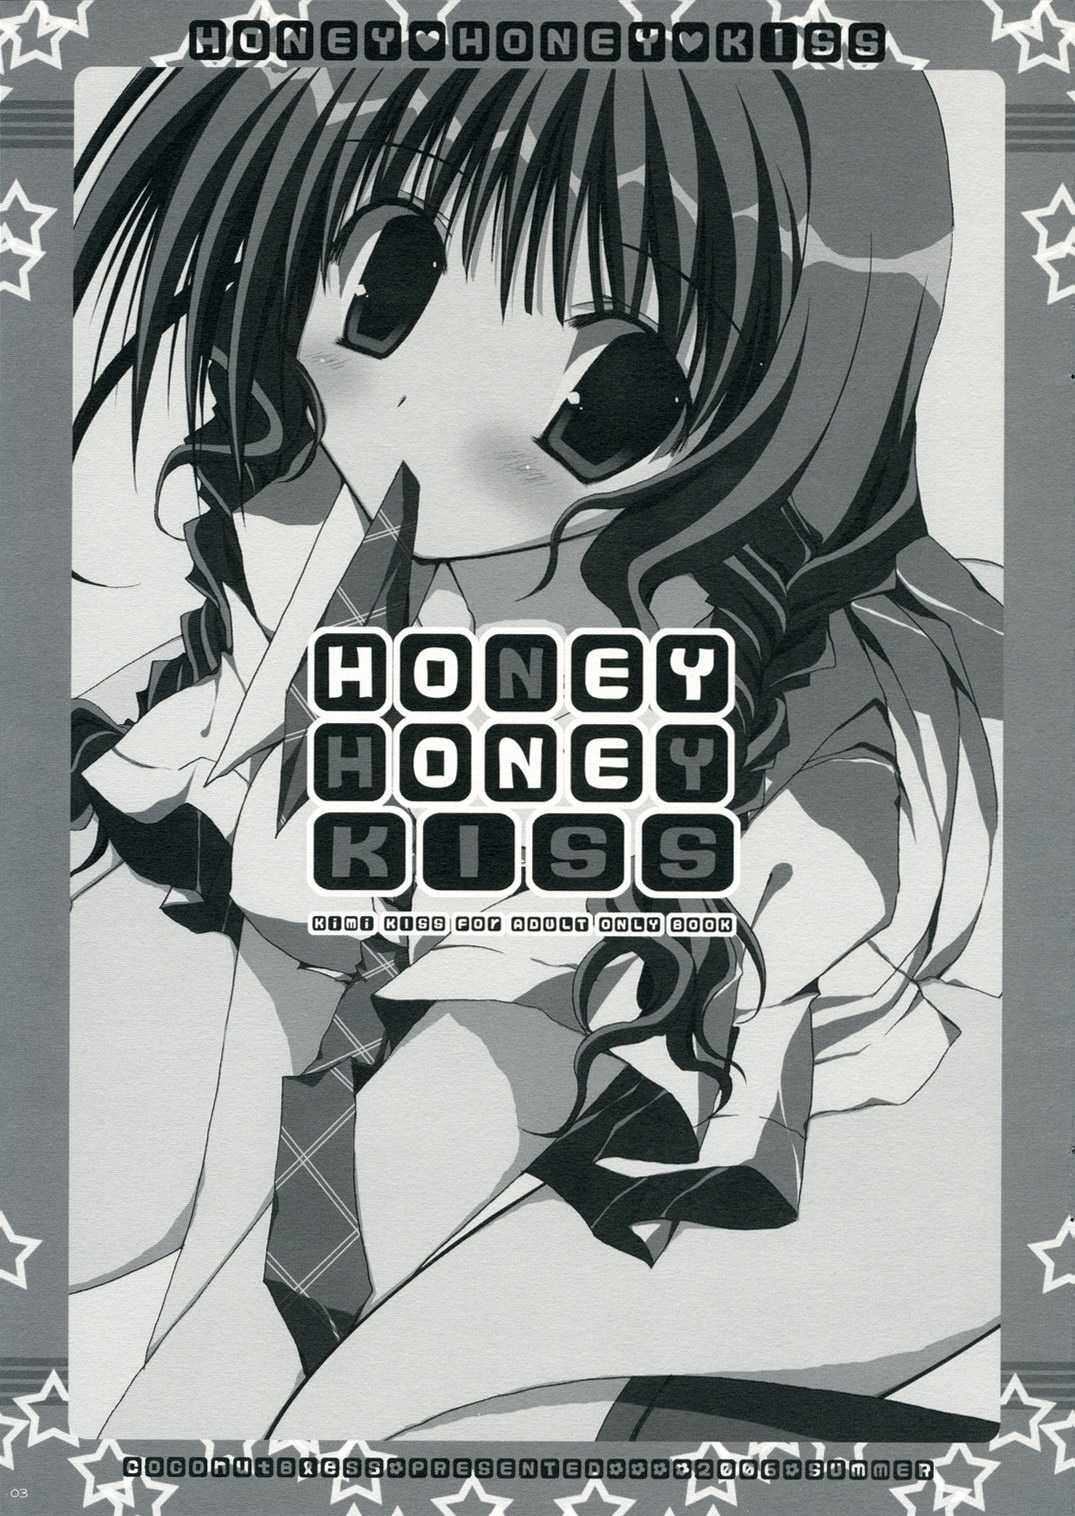 Kimikiss - HONEY HONEY KISS 